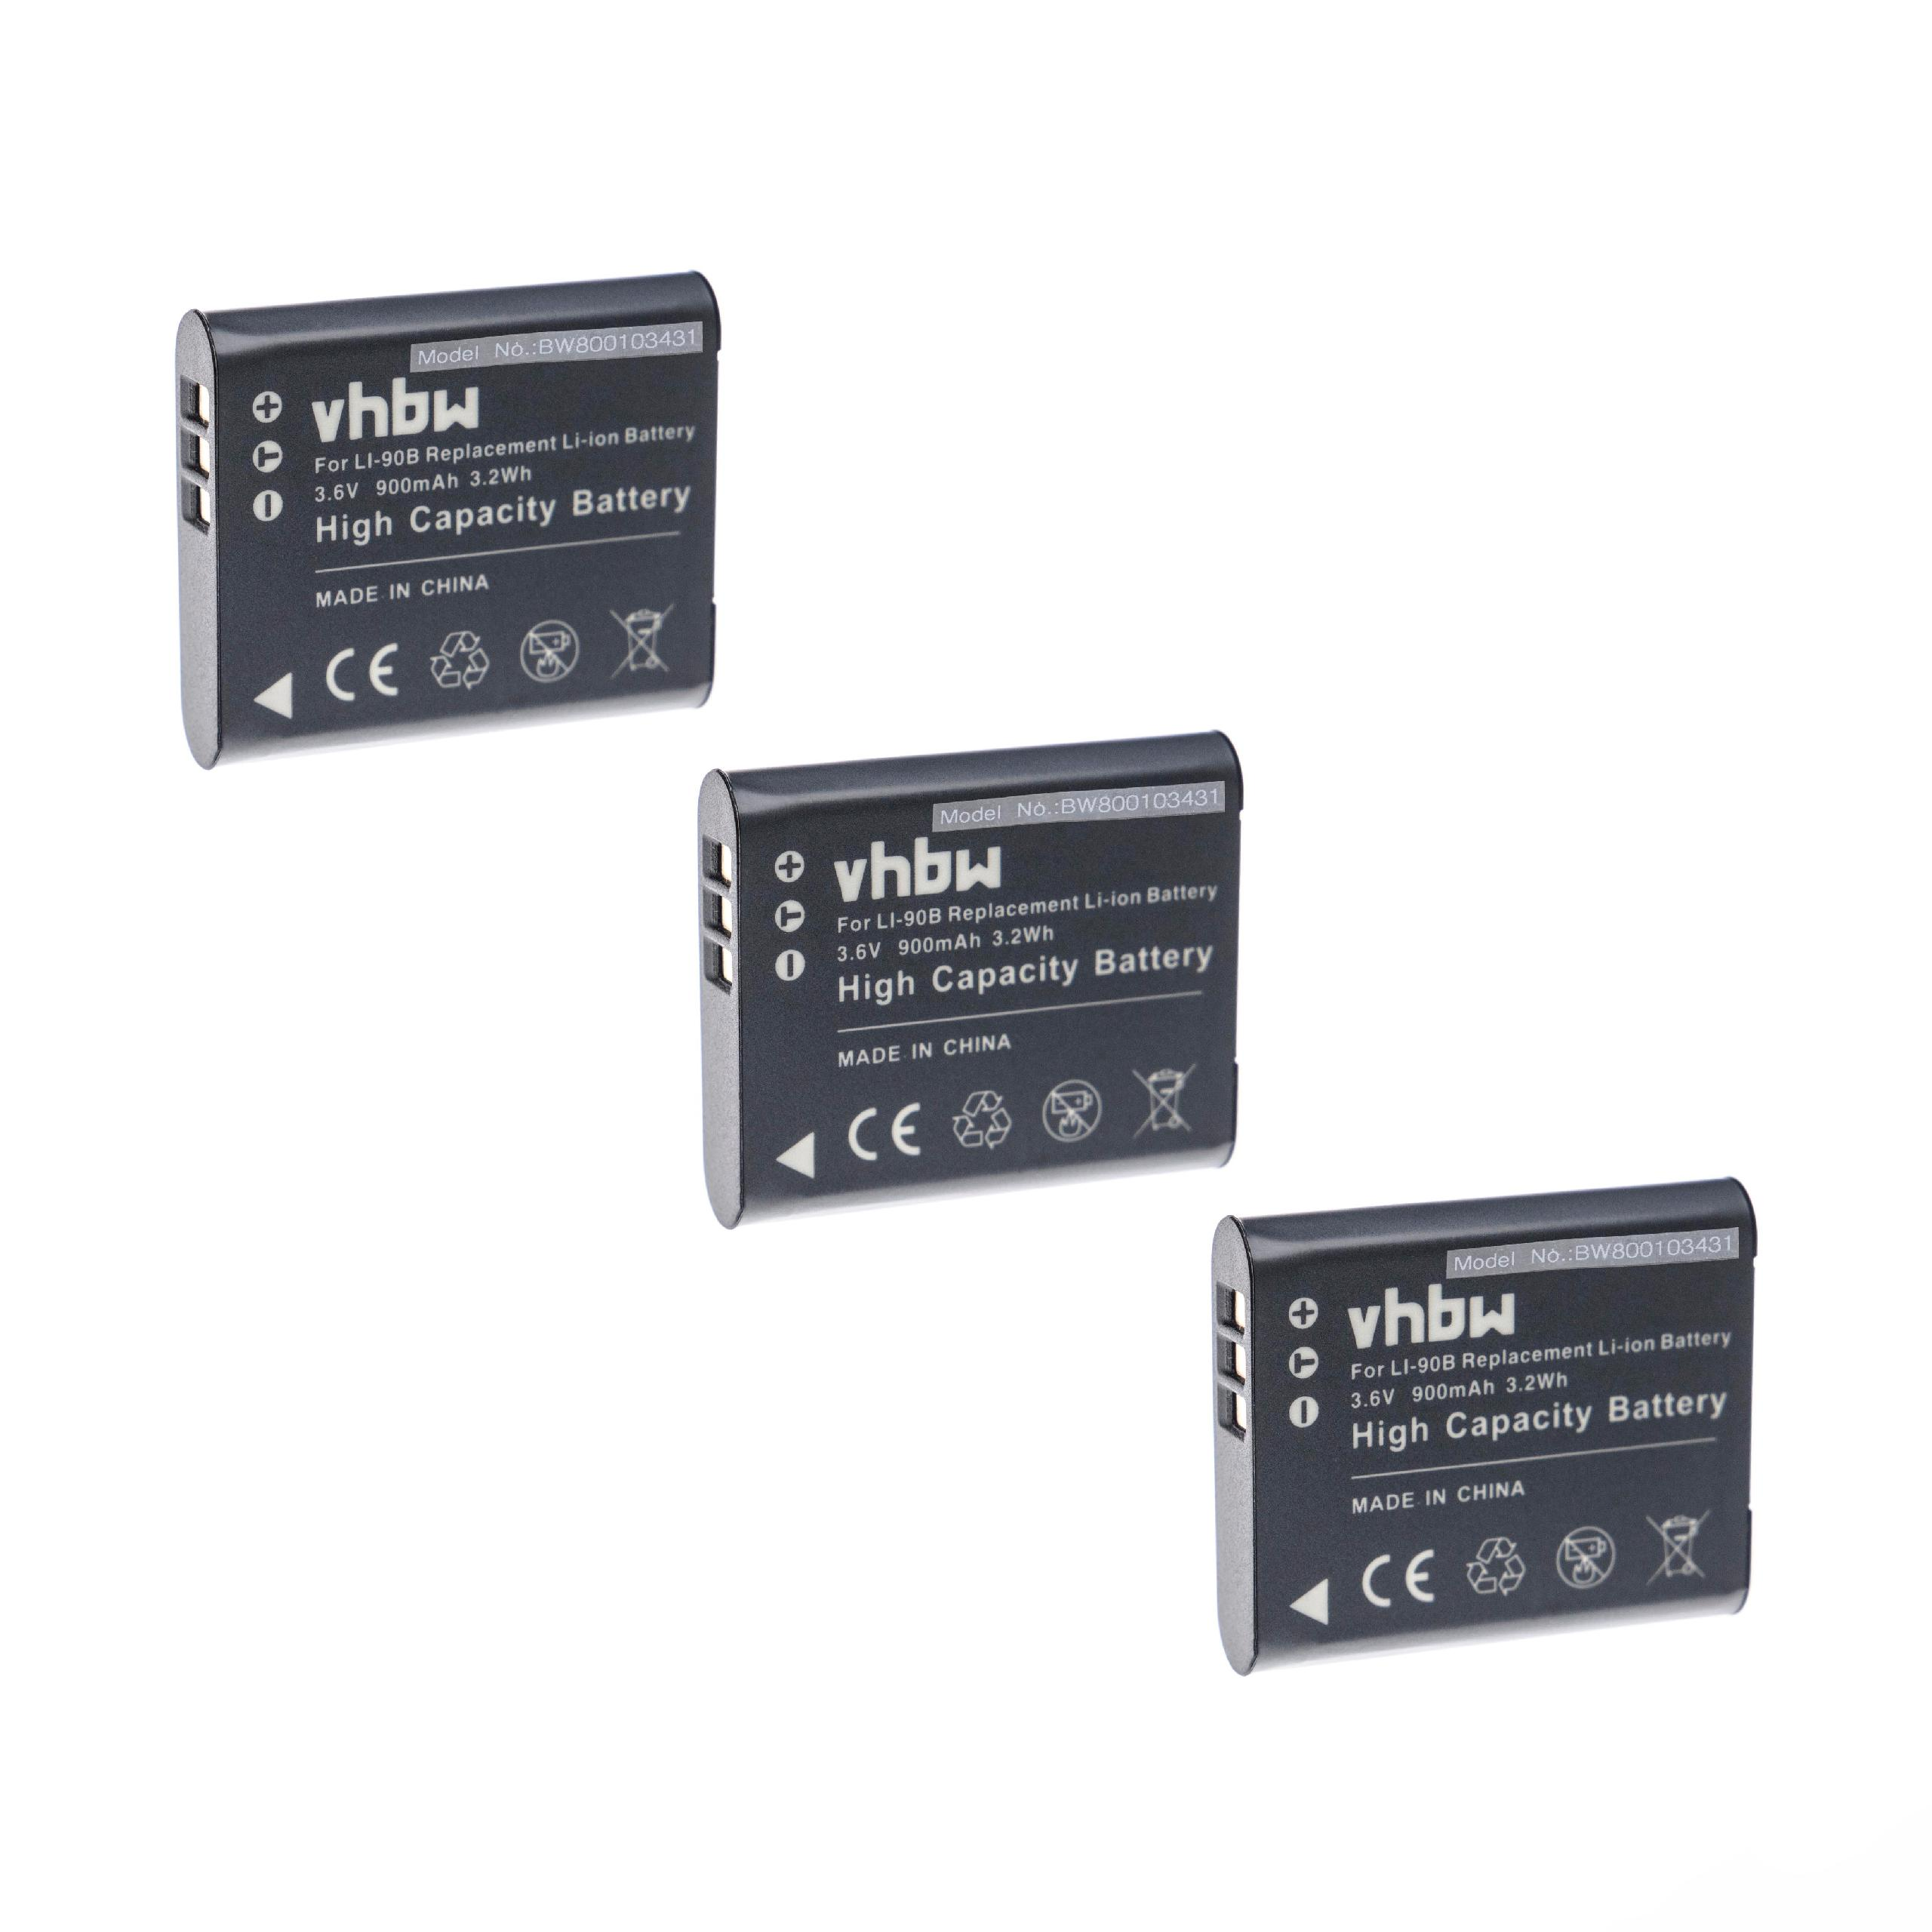 VHBW kompatibel mit Volt, 900 SH-60, SH-1, Akku Stylus SH-2, Traveller Kamera, - SH-50 SP-100EE, Li-Ion 3.6 Olympus